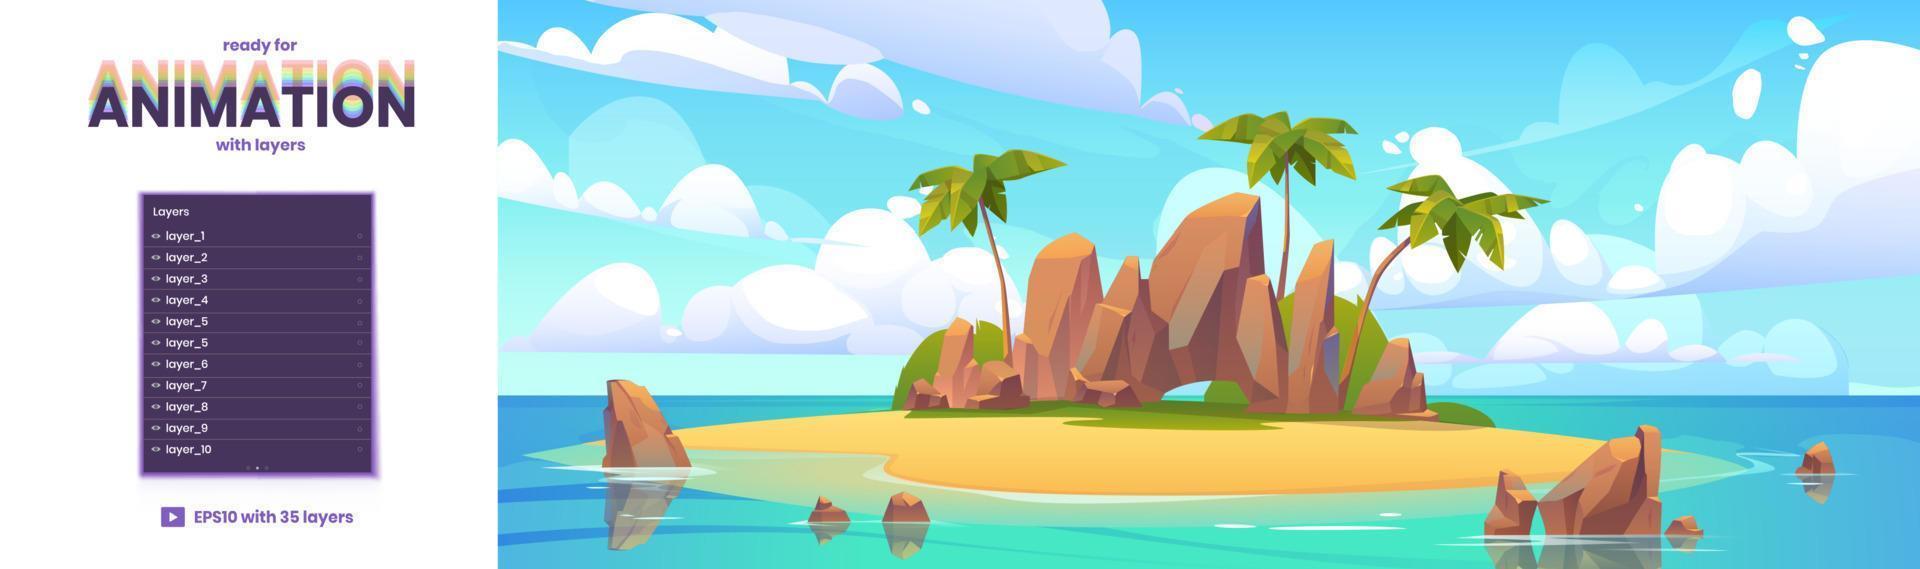 île en arrière-plan de dessin animé de l'océan pour l'animation vecteur